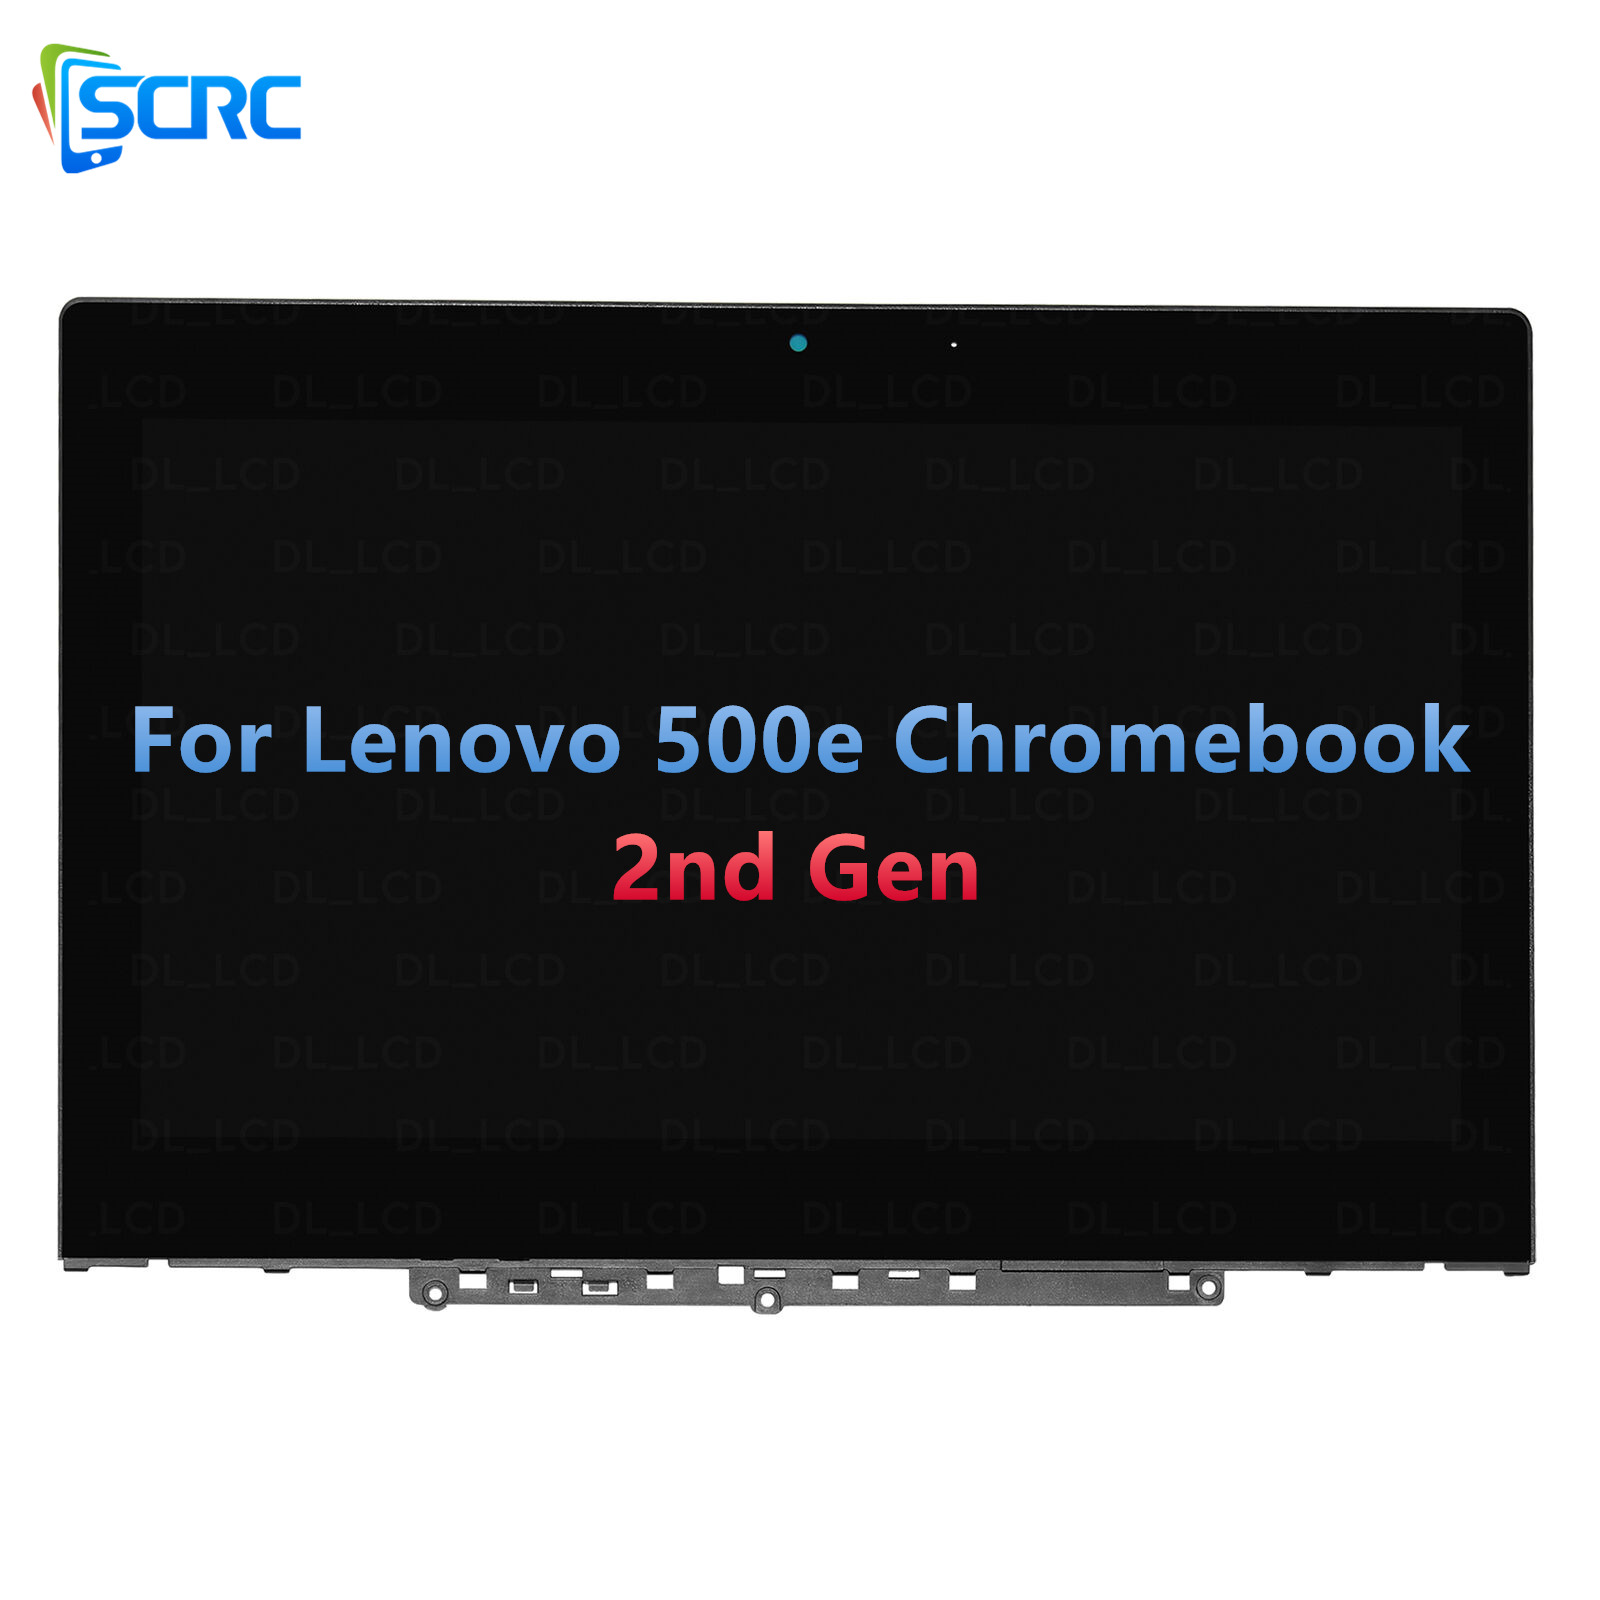 การเปลี่ยนหน้าจอสัมผัส LCD สำหรับ Lenovo 500e Chromebook รุ่นที่ 2